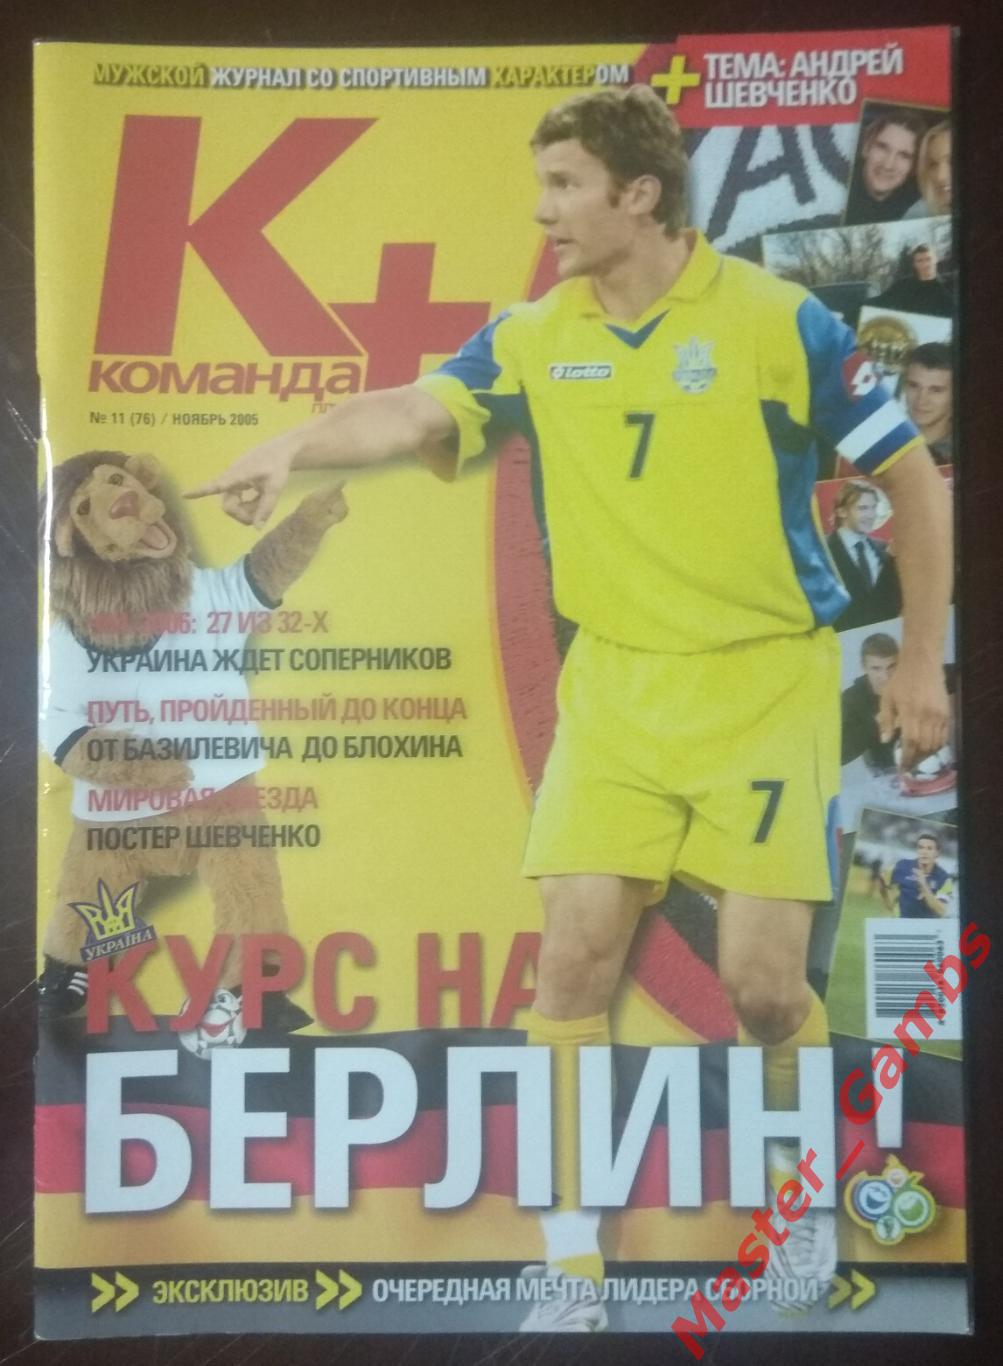 Журнал Команда + (плюс) #11 ноябрь 2005 Киев (Андрей Шевченко)